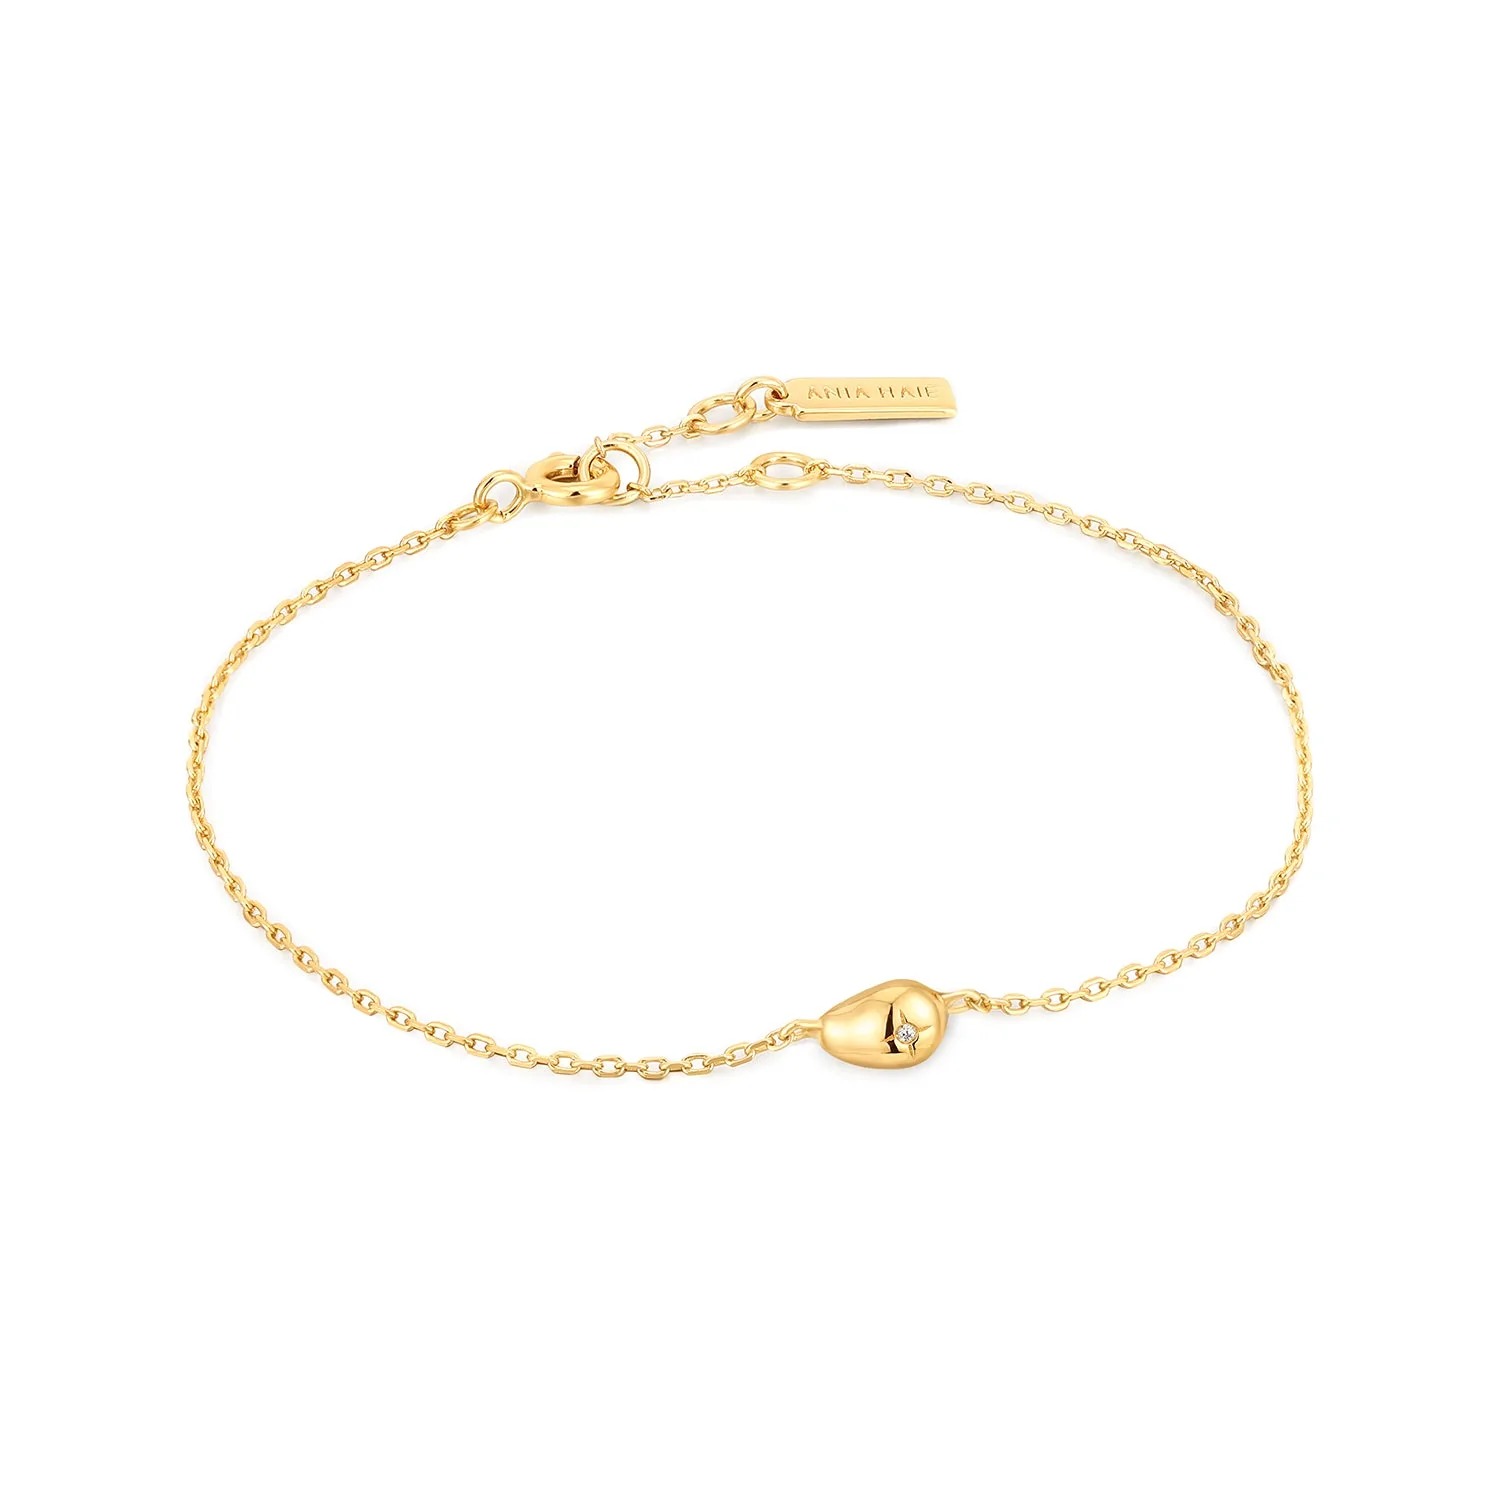 ANIA HAIE Pebble Sparkle Chain Bracelet, Gold-plated